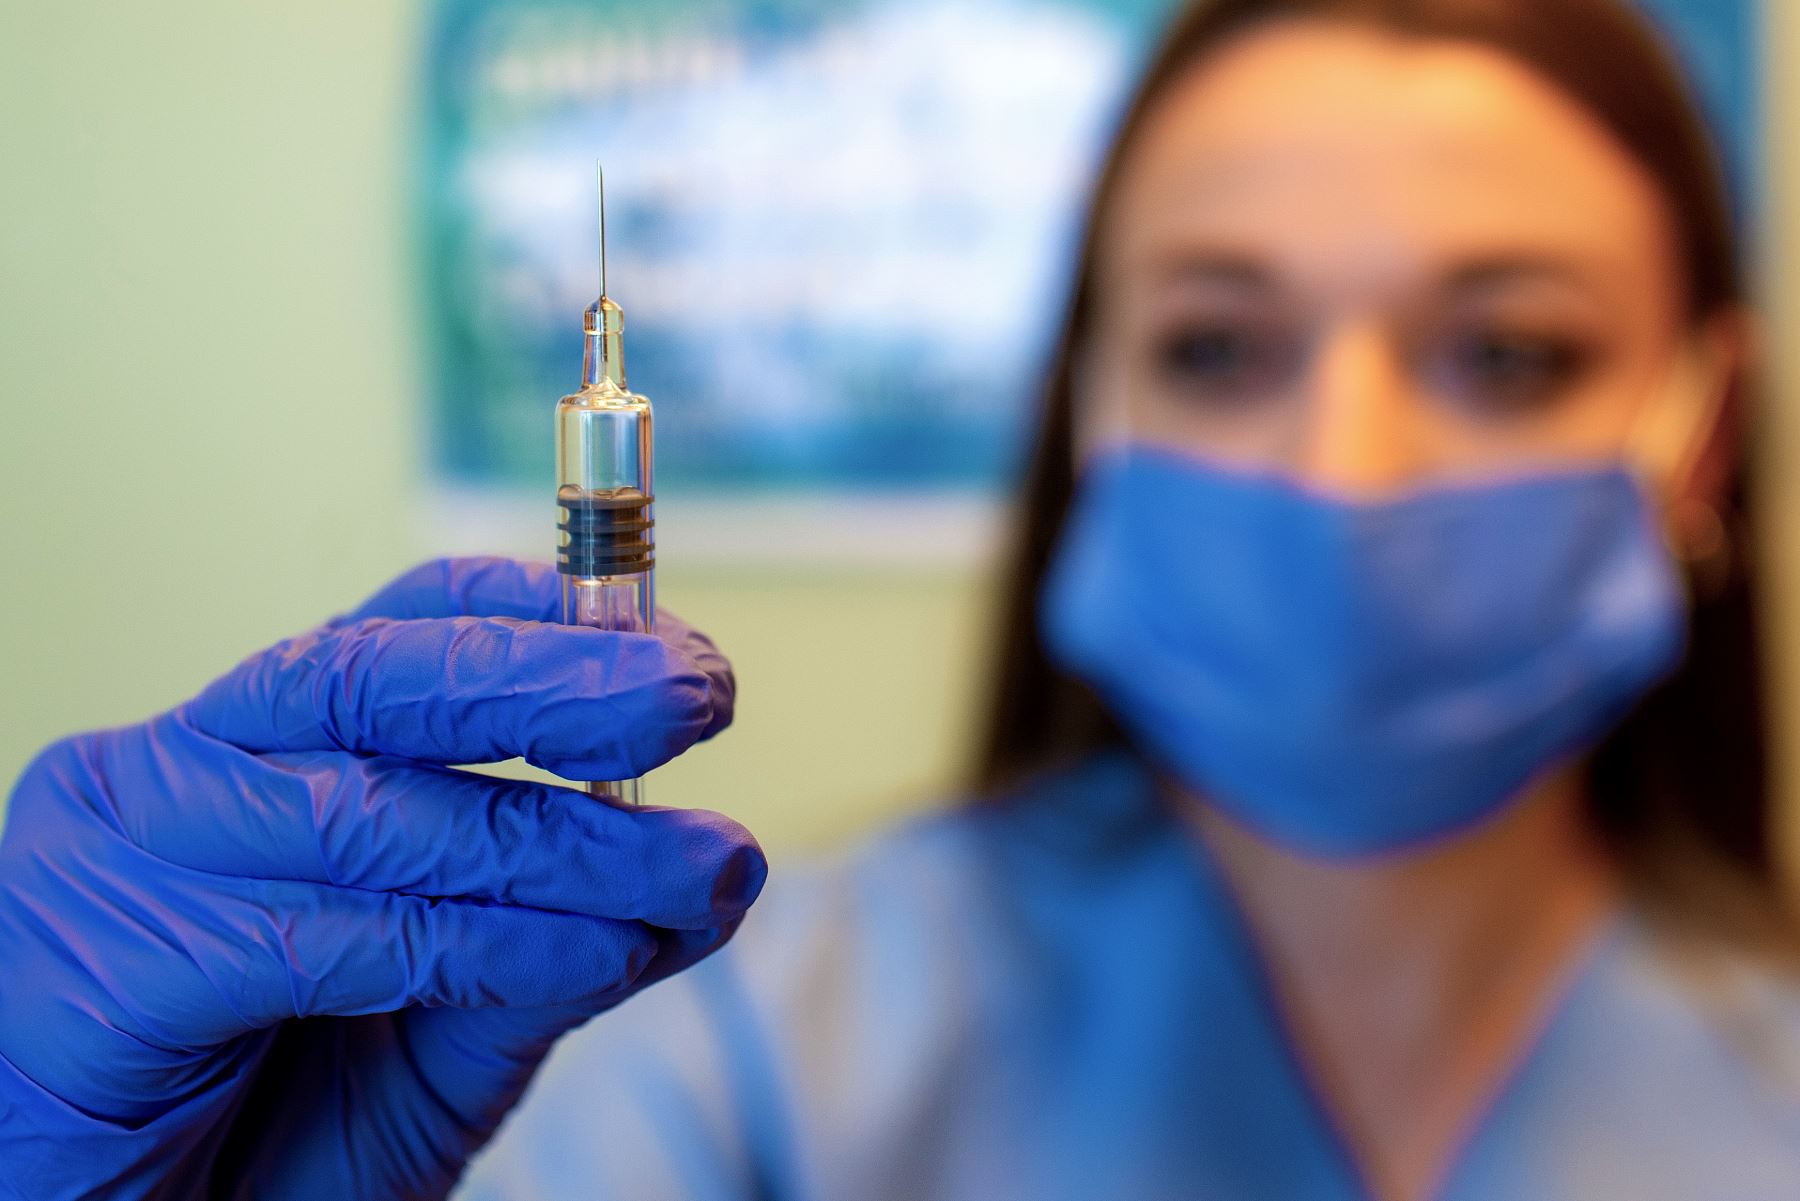 La vacuna es una de las más de 40 candidatas desarrolladas en estos momentos, pero ningún otro laboratorio ha proporcionado resultados tan avanzados como éstos. Foto: AFP